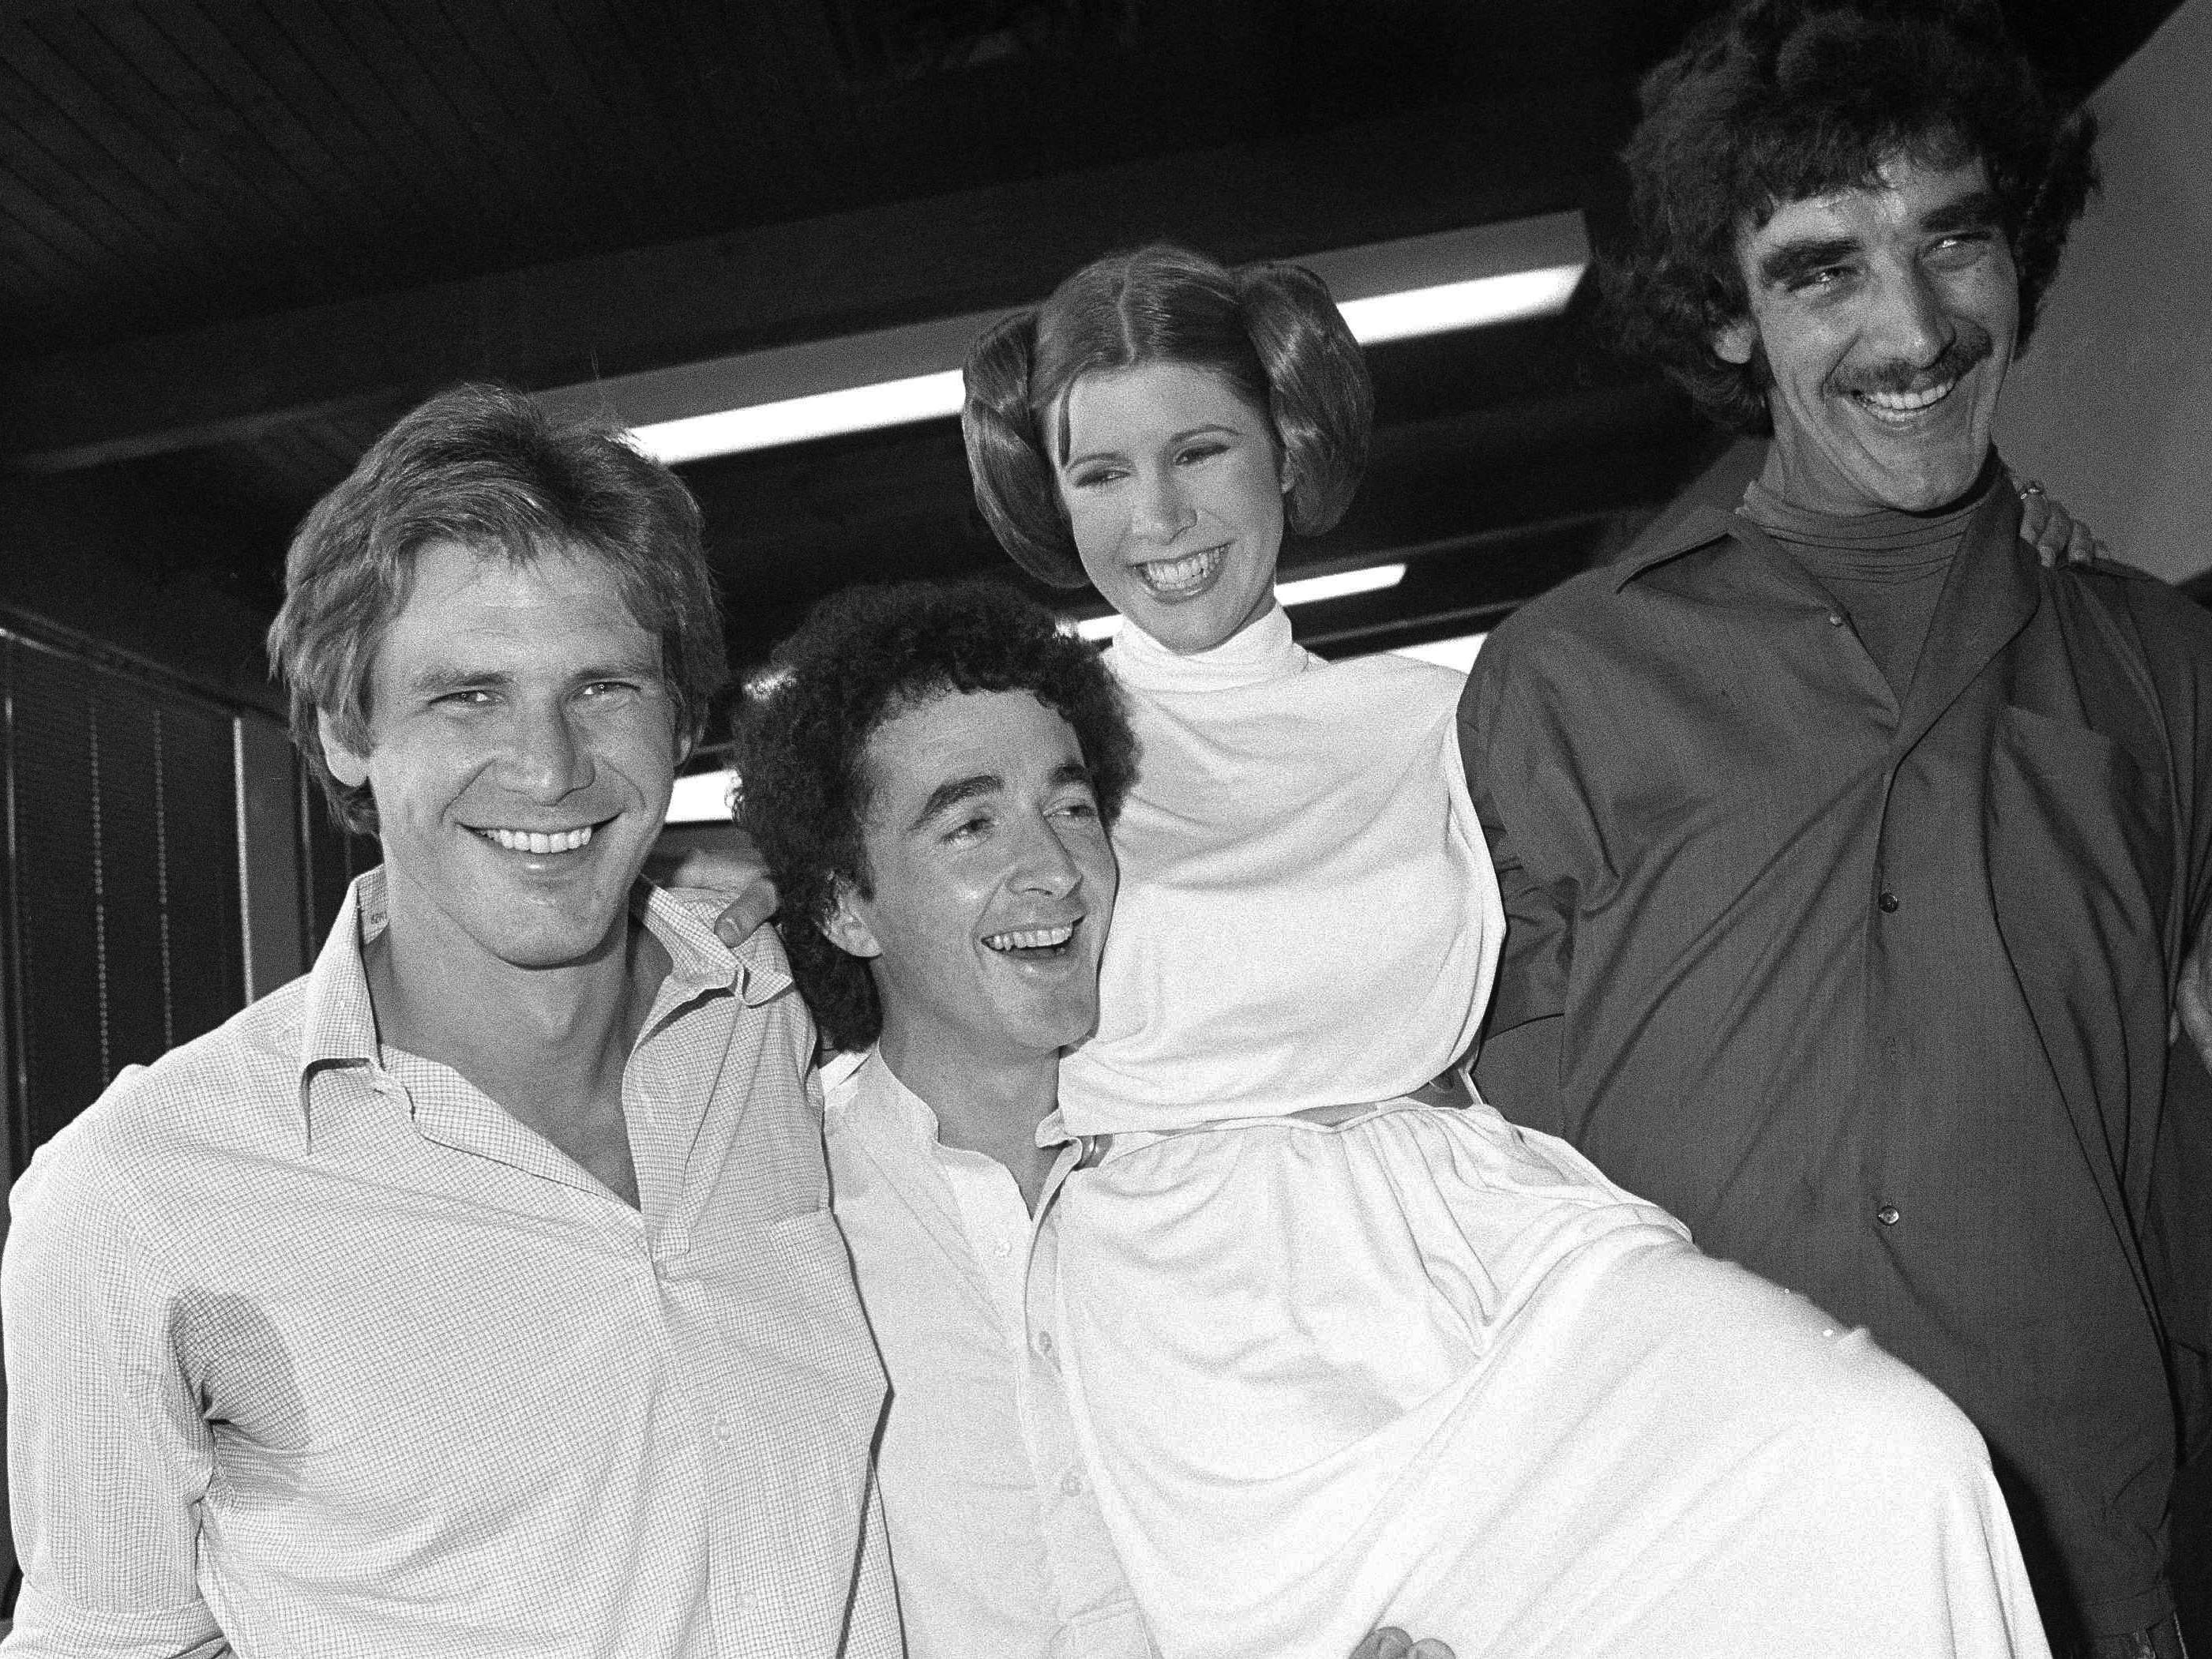 Als heroische Prinzessin Leia in der "Star Wars"-Serie wurde Carrie Fisher berühmt.